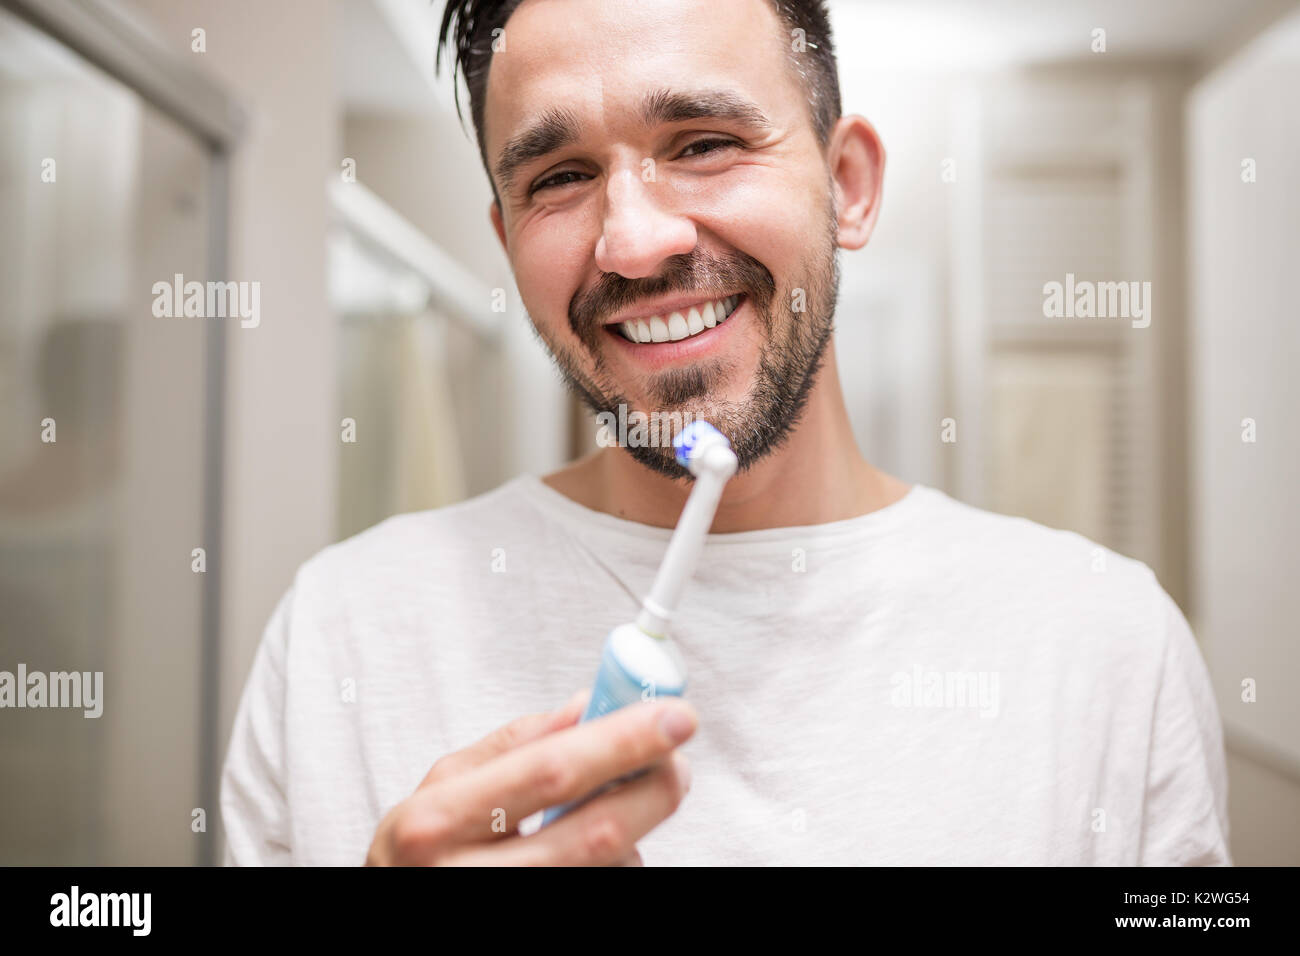 Guapo latino Hombre sujetando un cepillo dental eléctrico y sonriente. Él tiene el pelo negro, barba y vestidos de blanco pijama. Baño interior está en la b Foto de stock